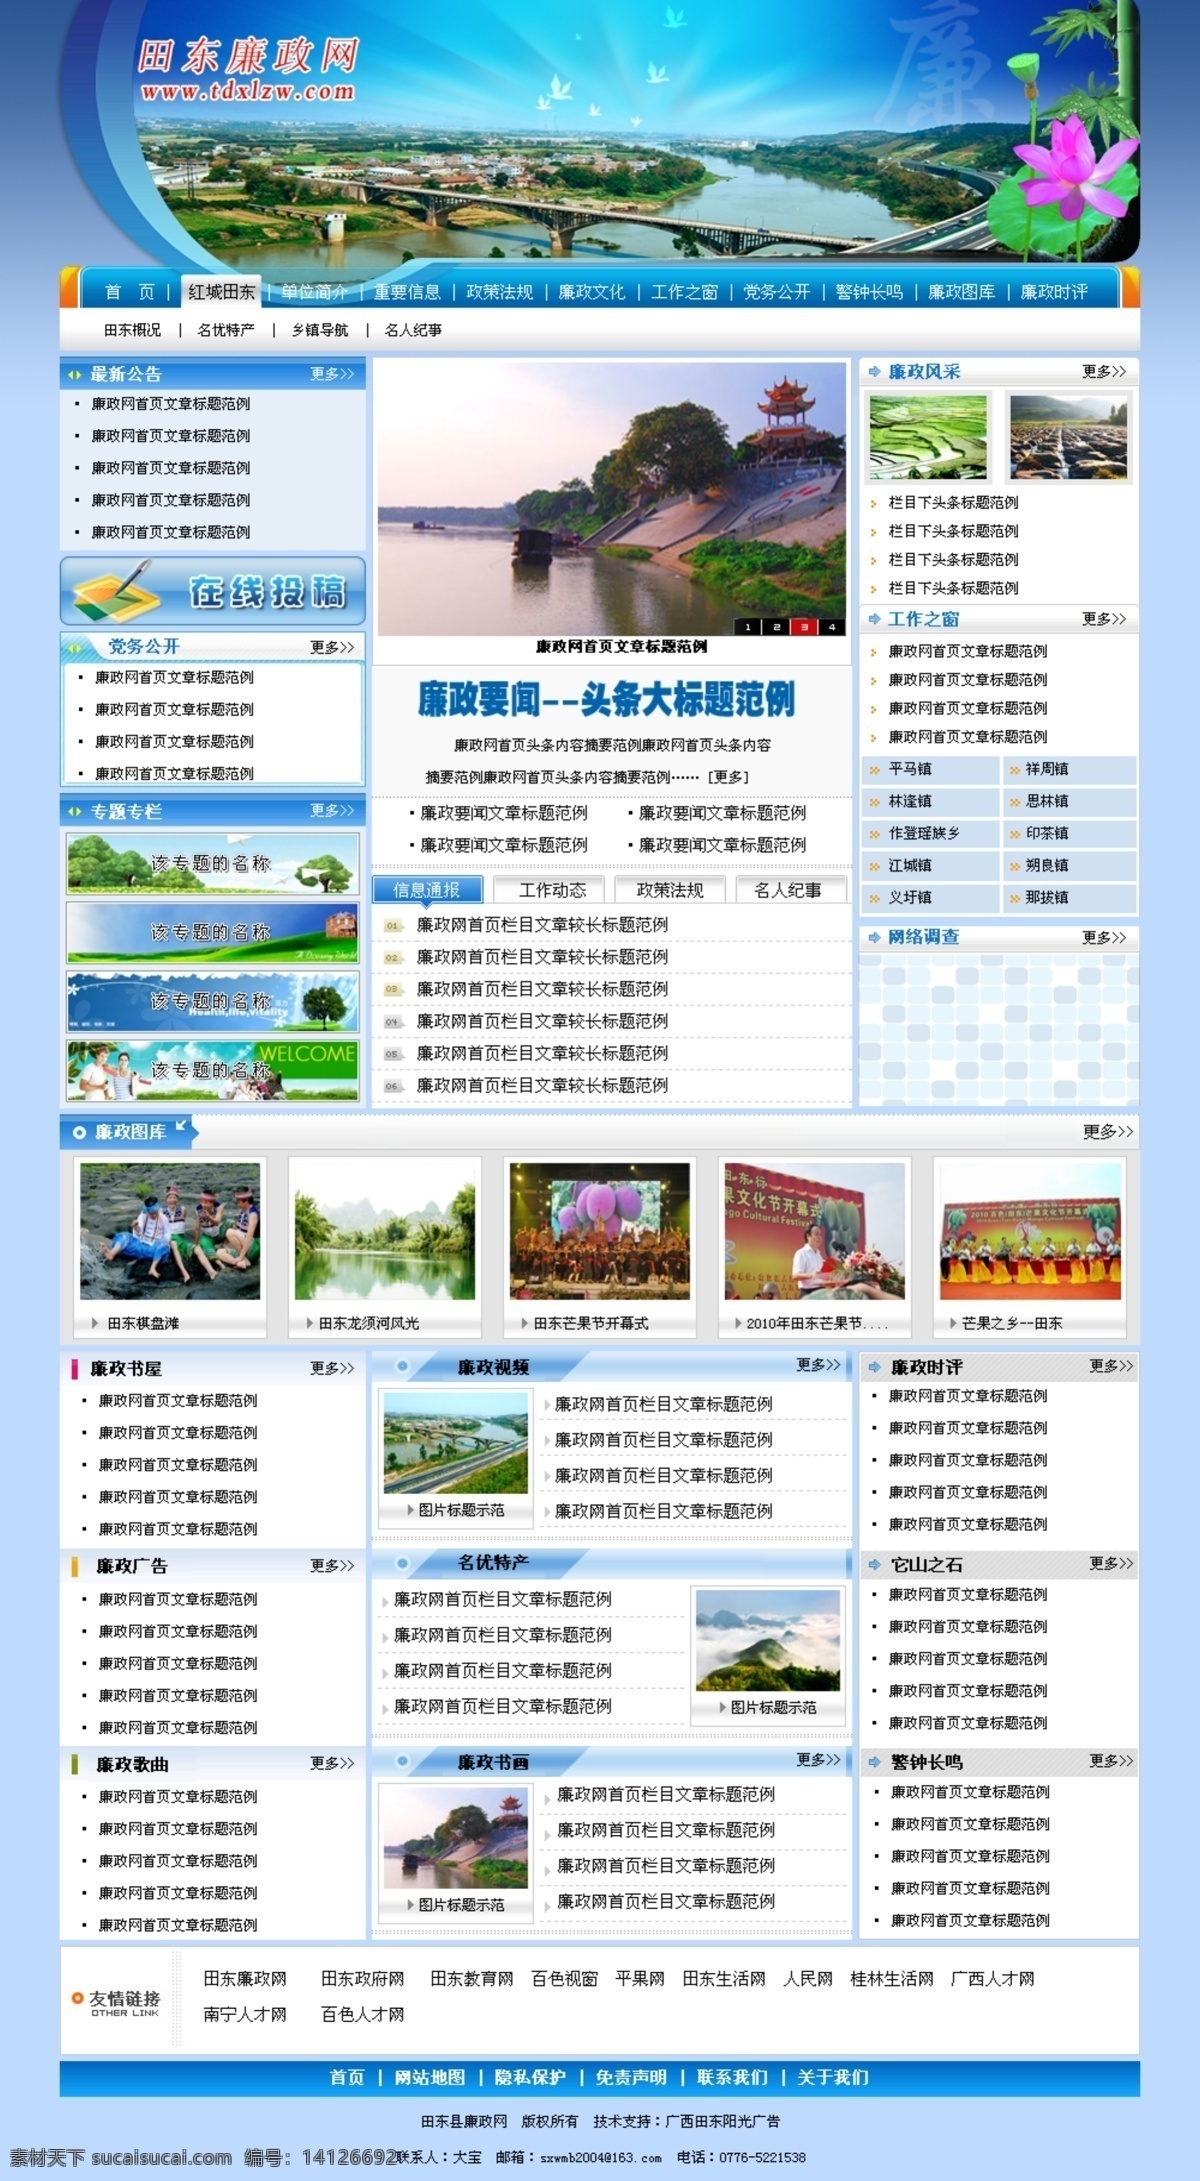 网页模板 网站建设 网站模板 源文件 政府网站 中文模板 模板下载 网站制作 网页素材